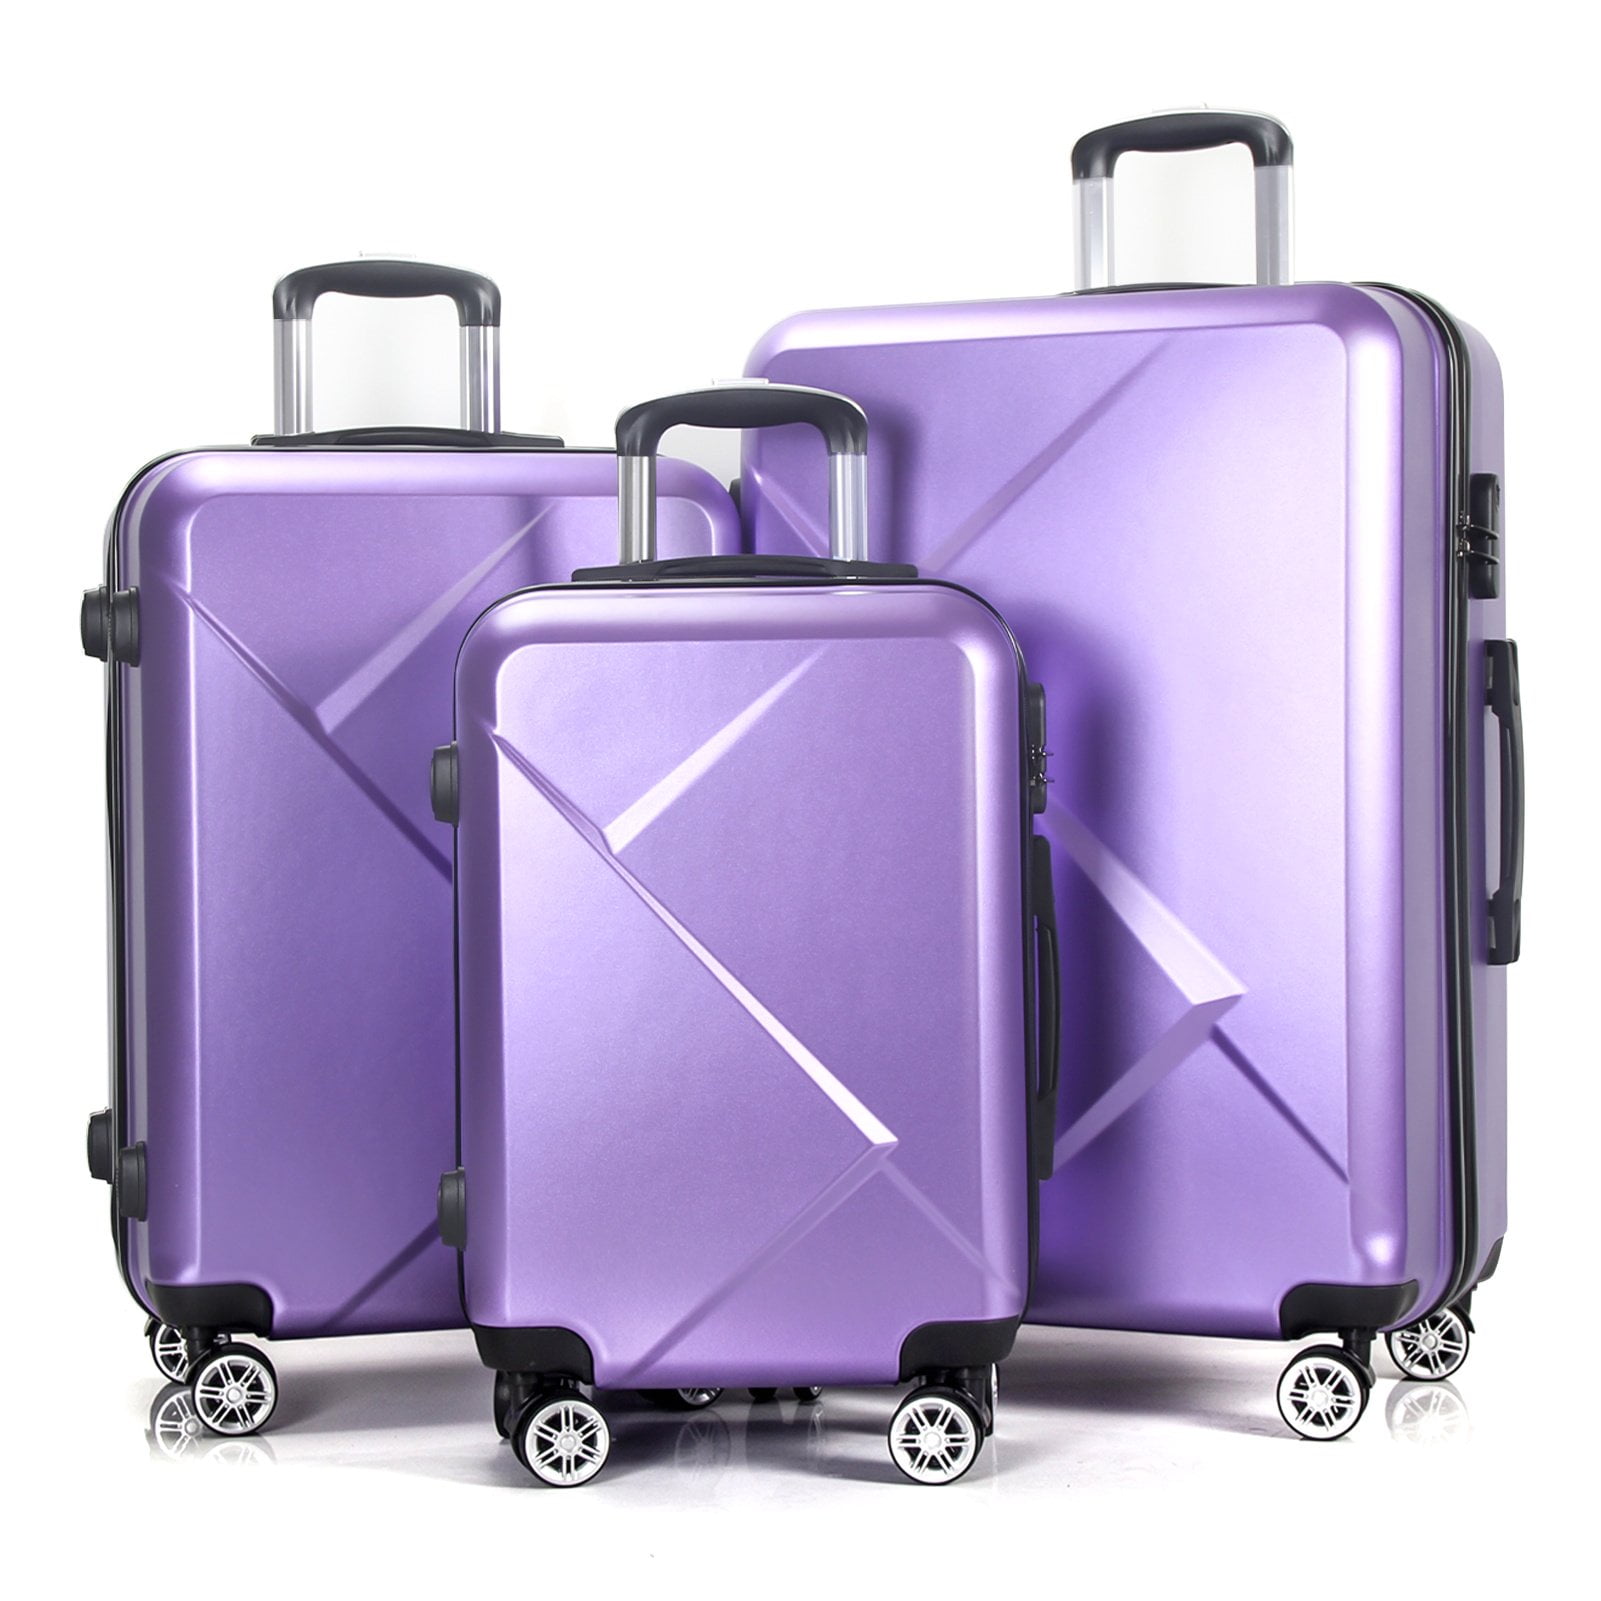 AEDILYS 3 Piece Luggage Sets, ABS Hardshell Hardside Suitcase Set ...